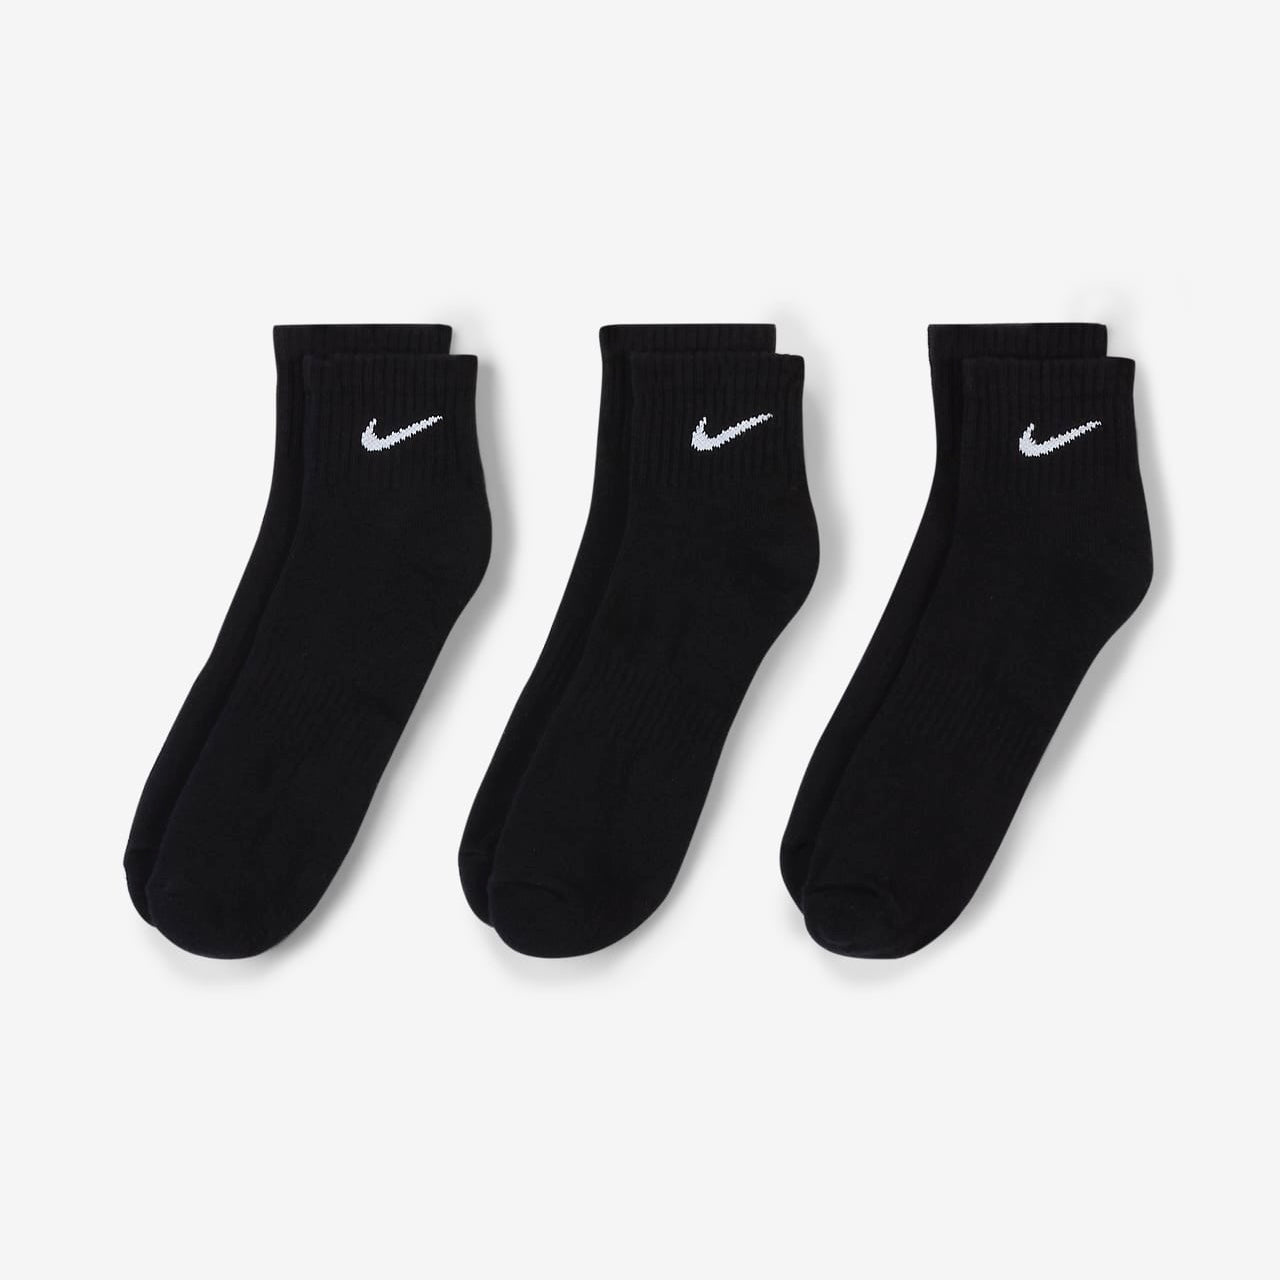 N-I-K-E. All black ankles socks